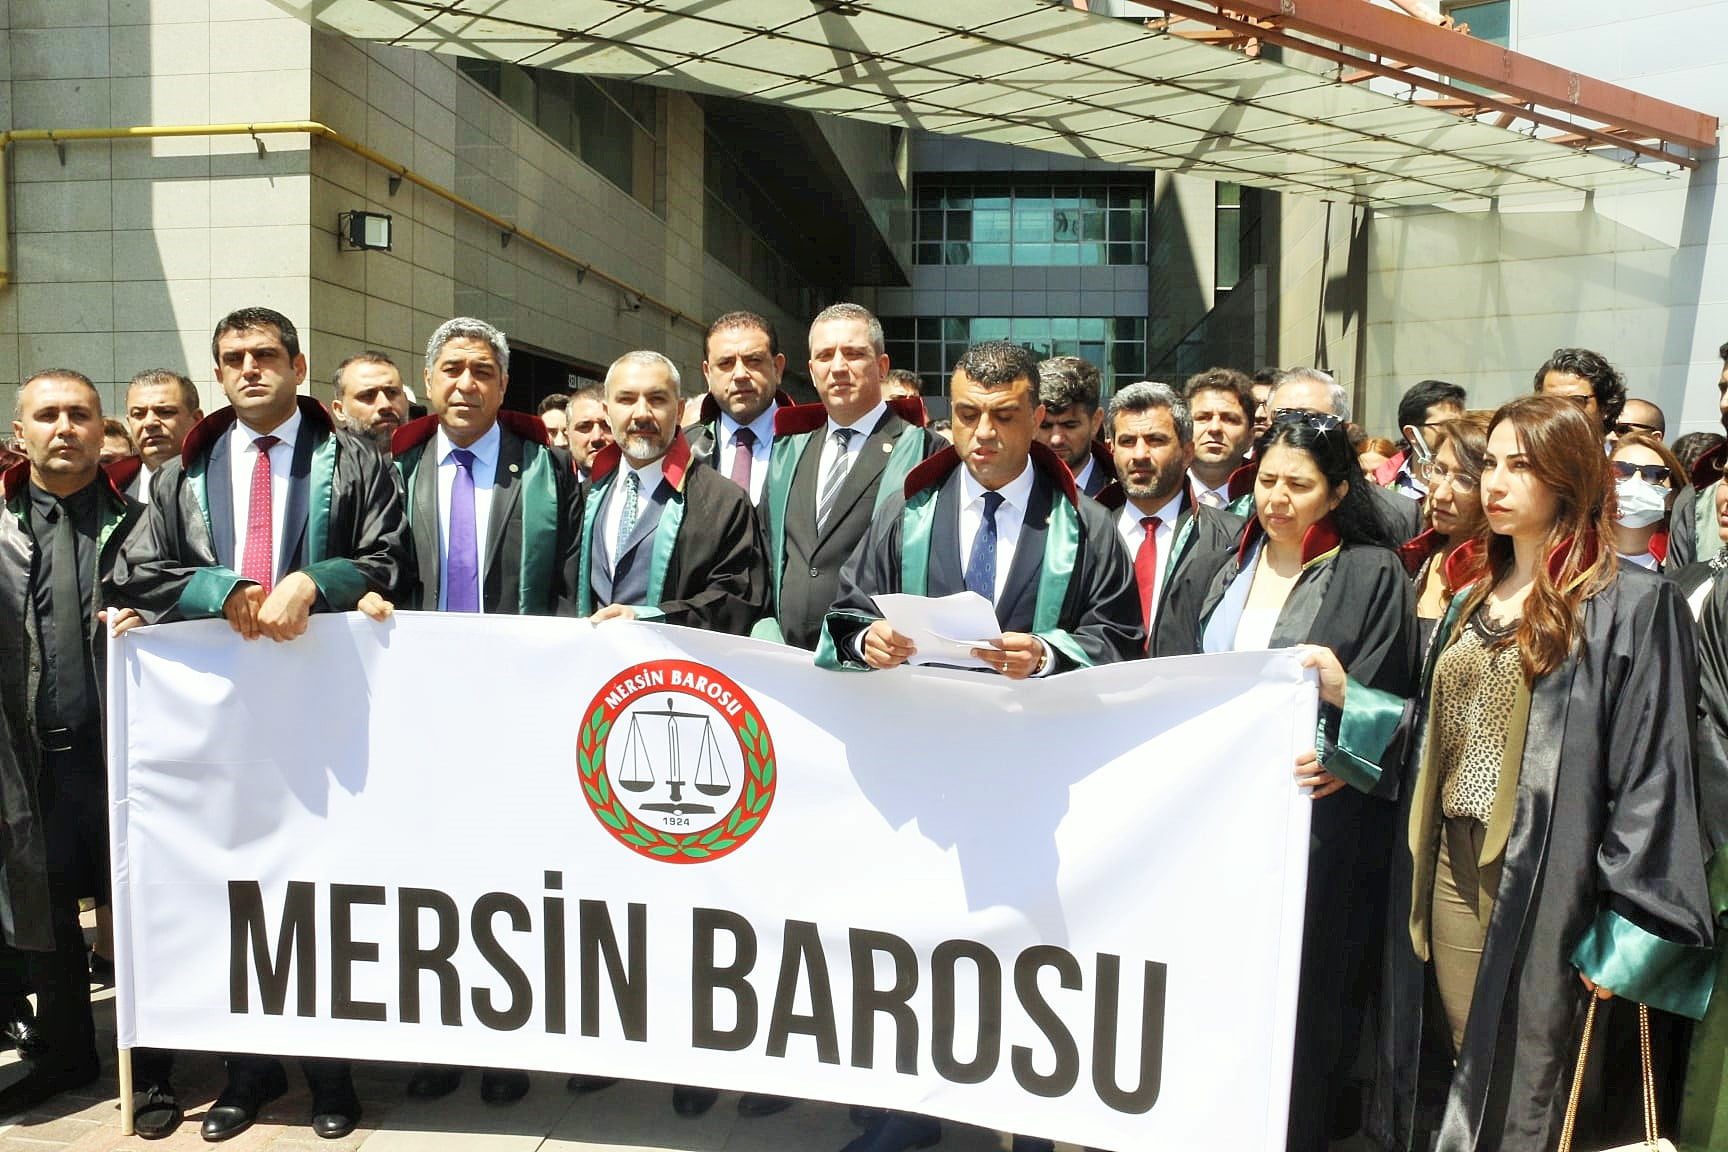 Mersin Barosu, TBB ve Baro Başkanlarından, Haklarında Soruşturma Başlatılan Avukatlara Destek